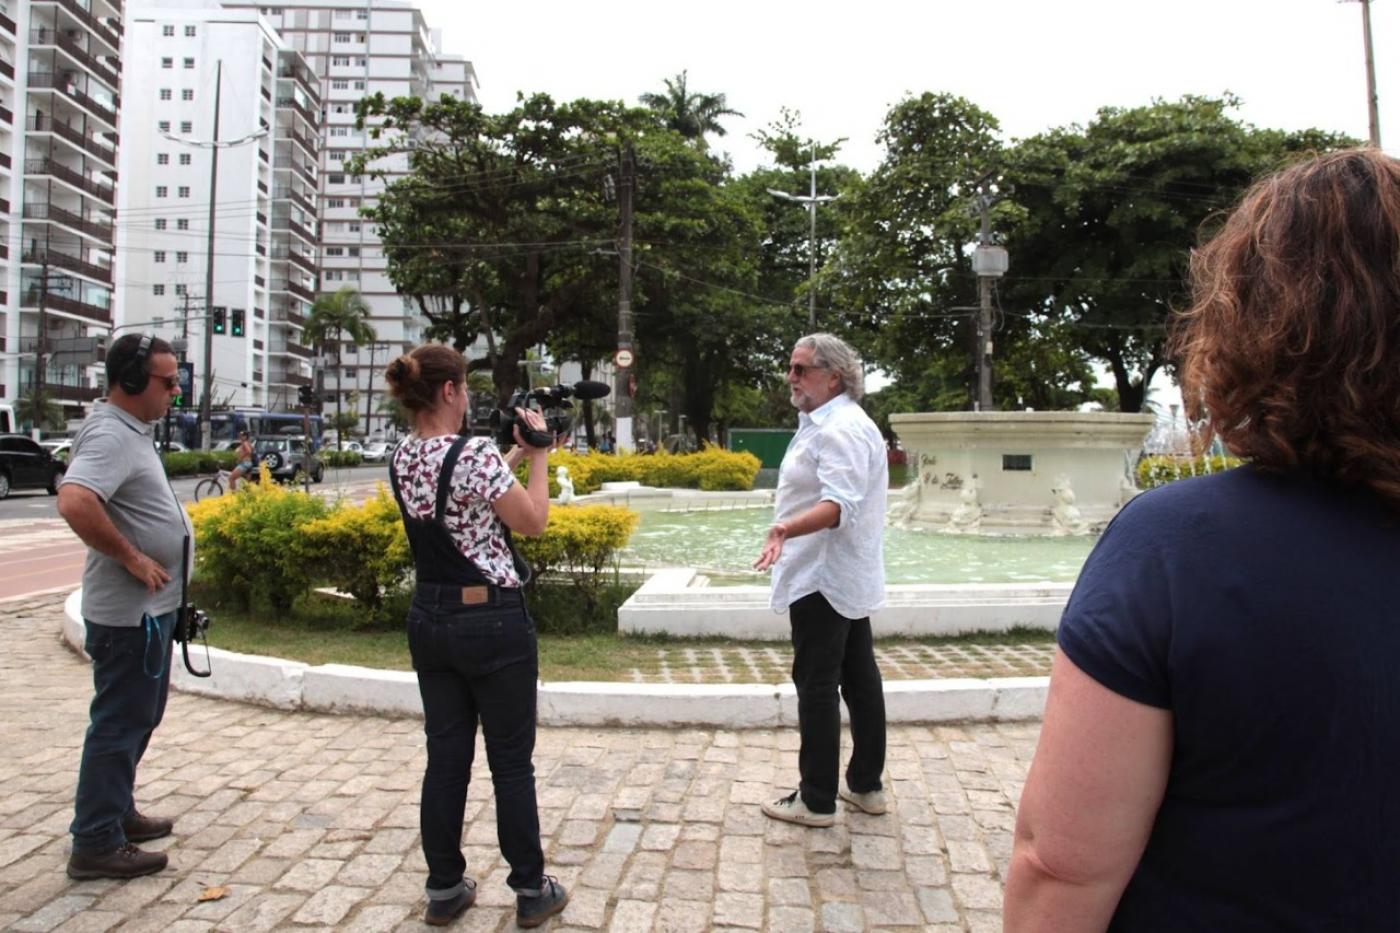 cinegrafista faz imagem na praça #paratodosverem